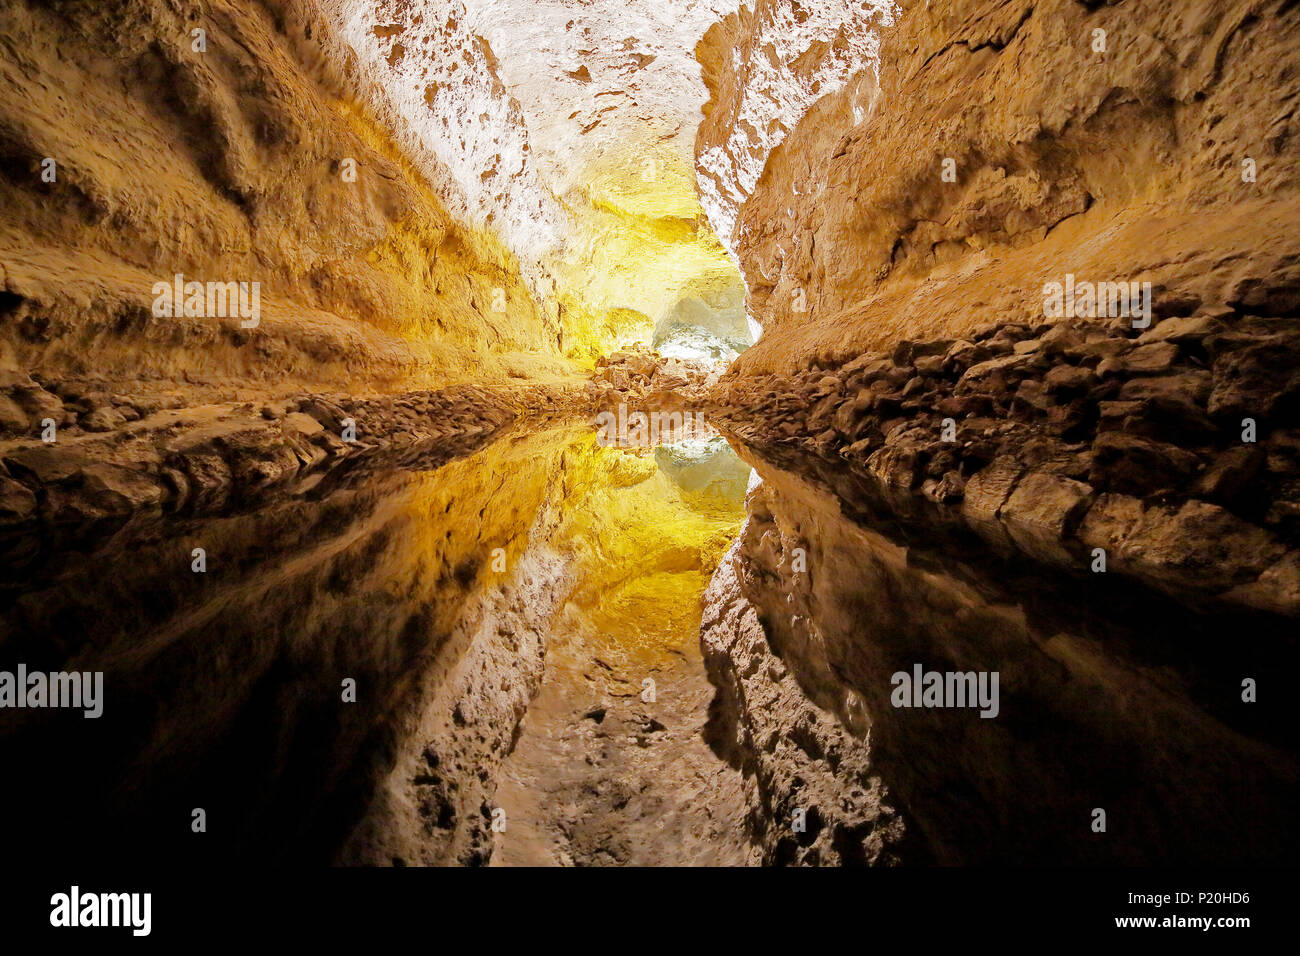 Spain. Canary Islands. Lanzarote. Cave of the Cueva de los Verdes. Stock Photo